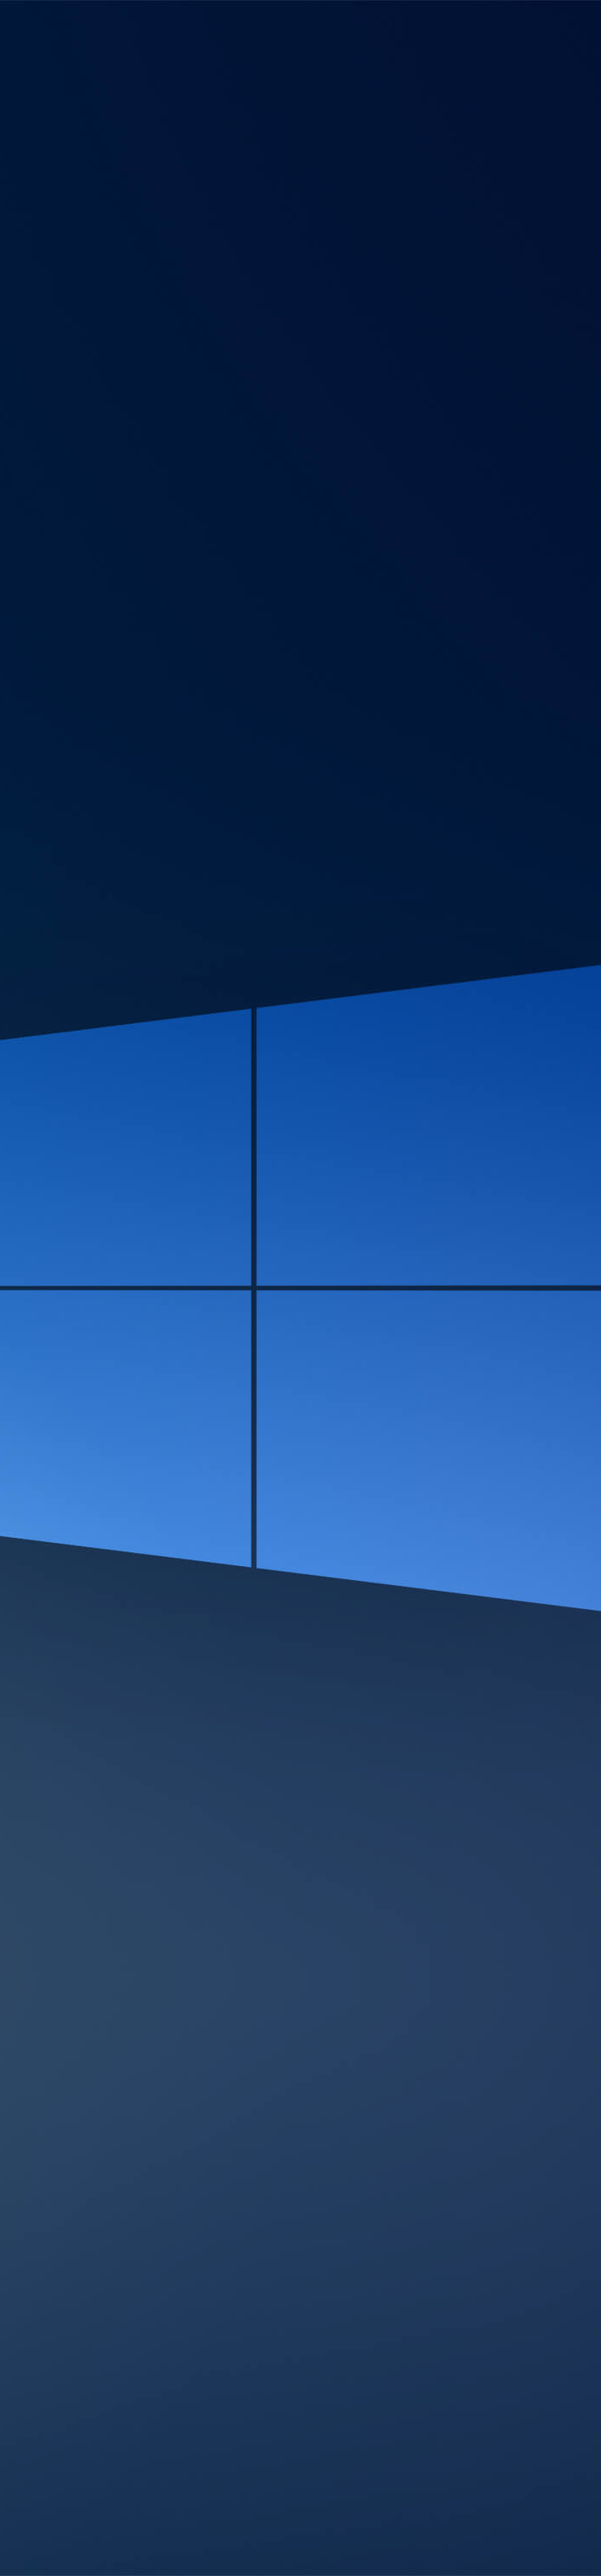 700x3000 Windows 10x Blue Logo 700x3000 Resolution Wallpaper Hd Hi